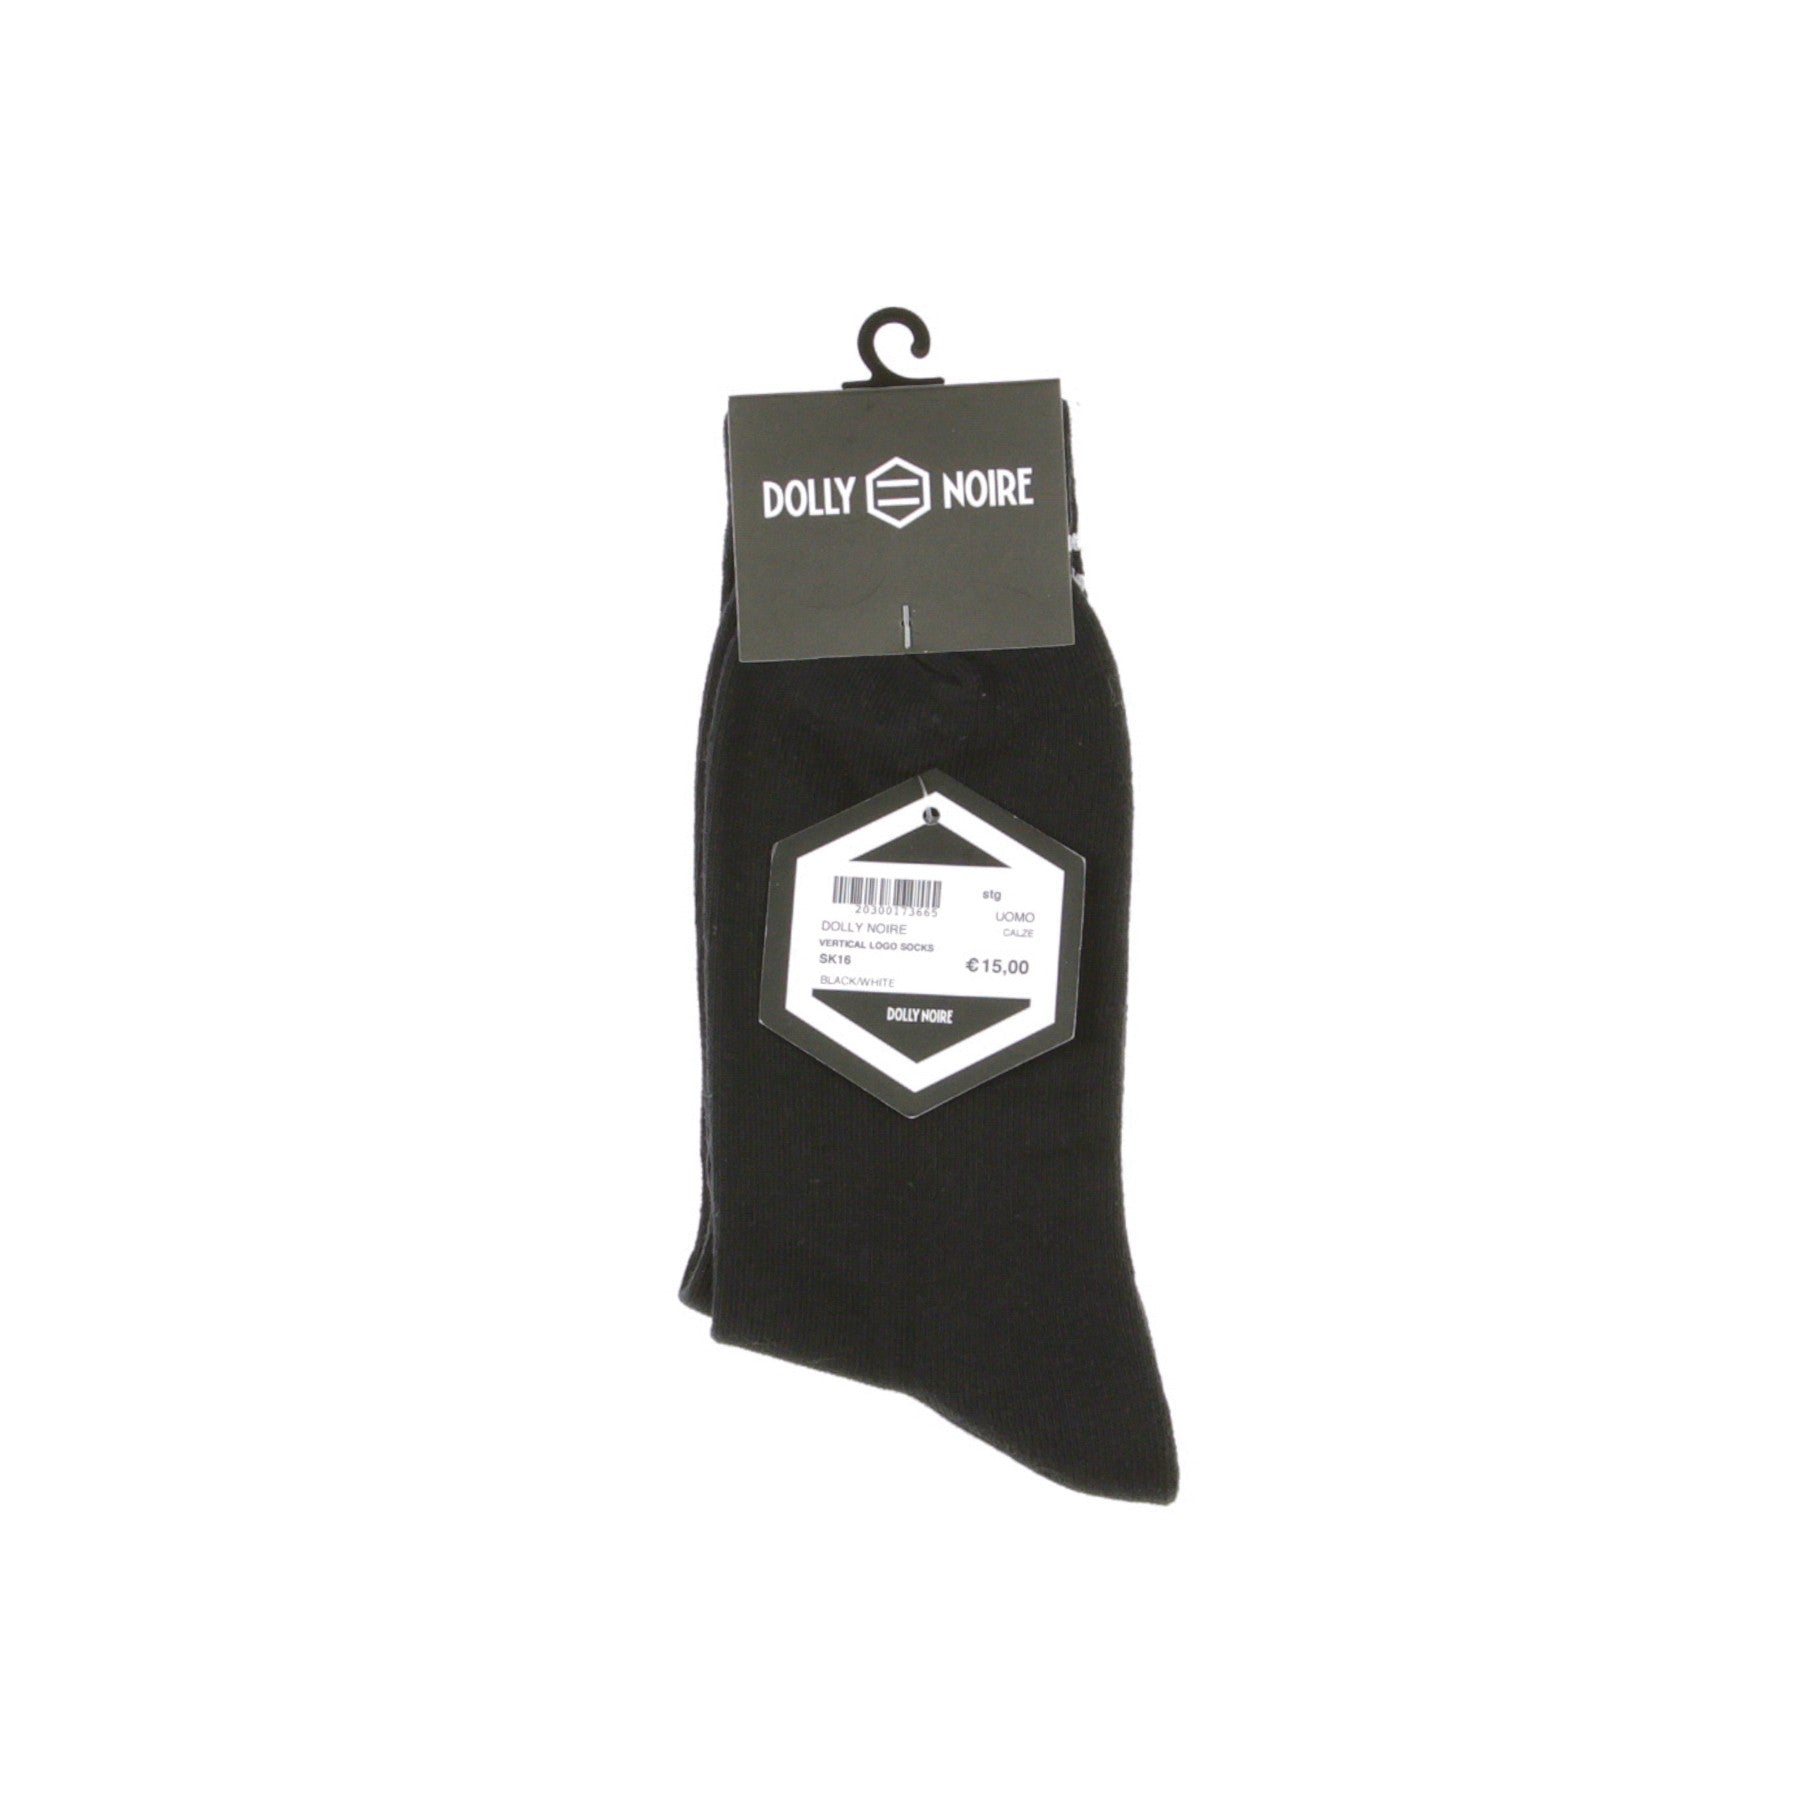 Dolly Noire, Calza Media Uomo Vertical Logo Socks, 